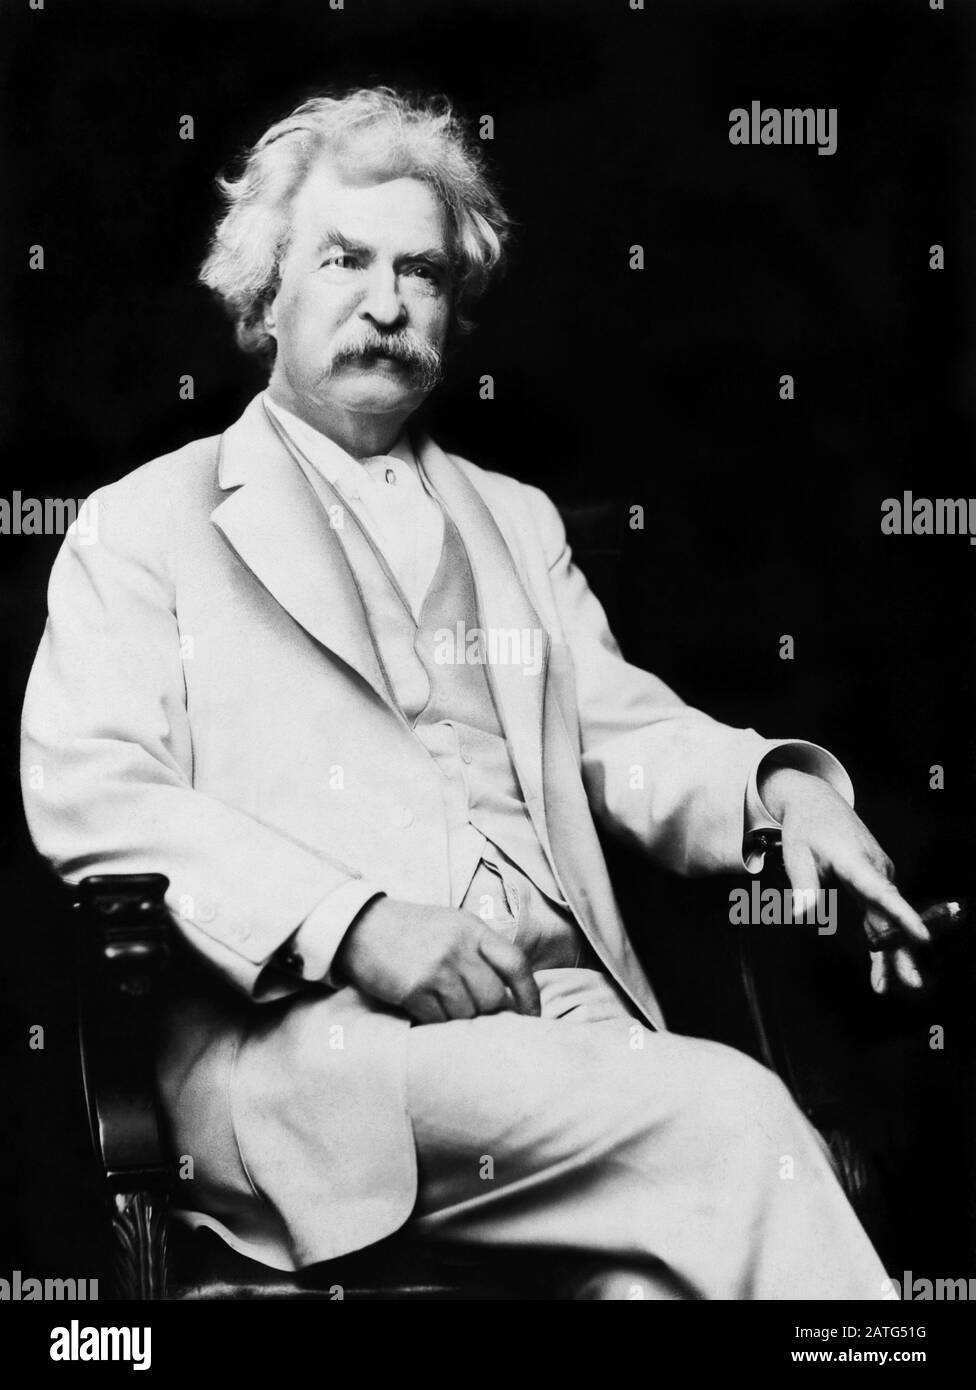 Vintage-Portrait-Foto des amerikanischen Schriftstellers und Humoristen Samuel Langhorne Klemens (zwischen 1835 und 1910), besser bekannt unter seinem Federnamen Mark Twain. Foto ca. 1907 von EINEM F Bradley aus New York. Stockfoto